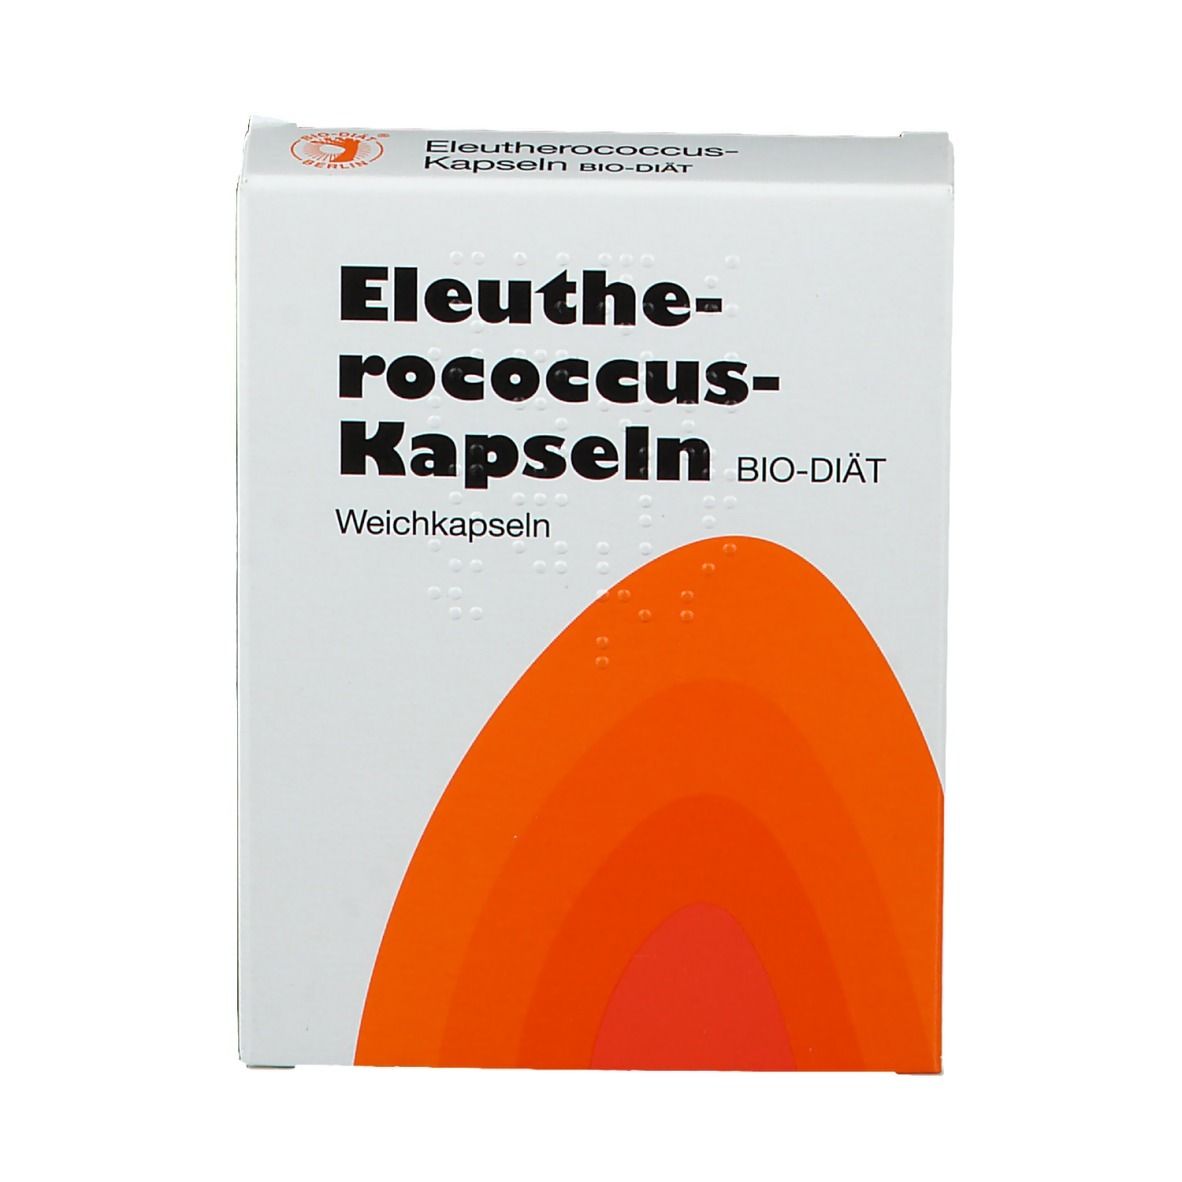 Eleutherococcus-Kapseln BIO-DIÄT